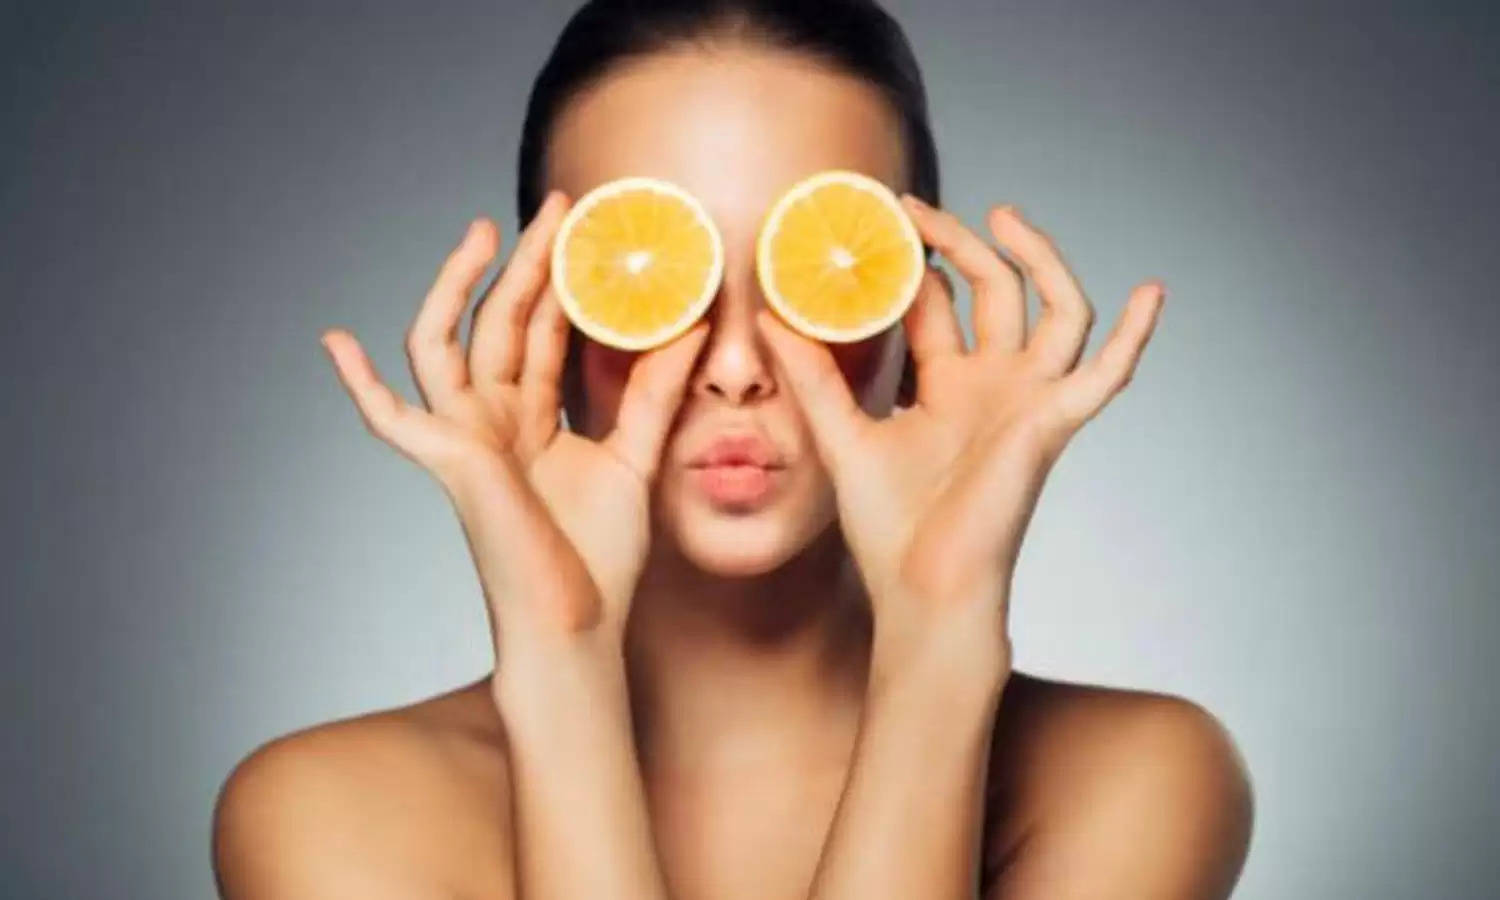 Lemon Face Tips: चेहरे पर डायरेक्ट नींबू का रस लगाने से पहले एक बार जरूर पढ़ लें ये खबर, वरना बाद में होगा रोना